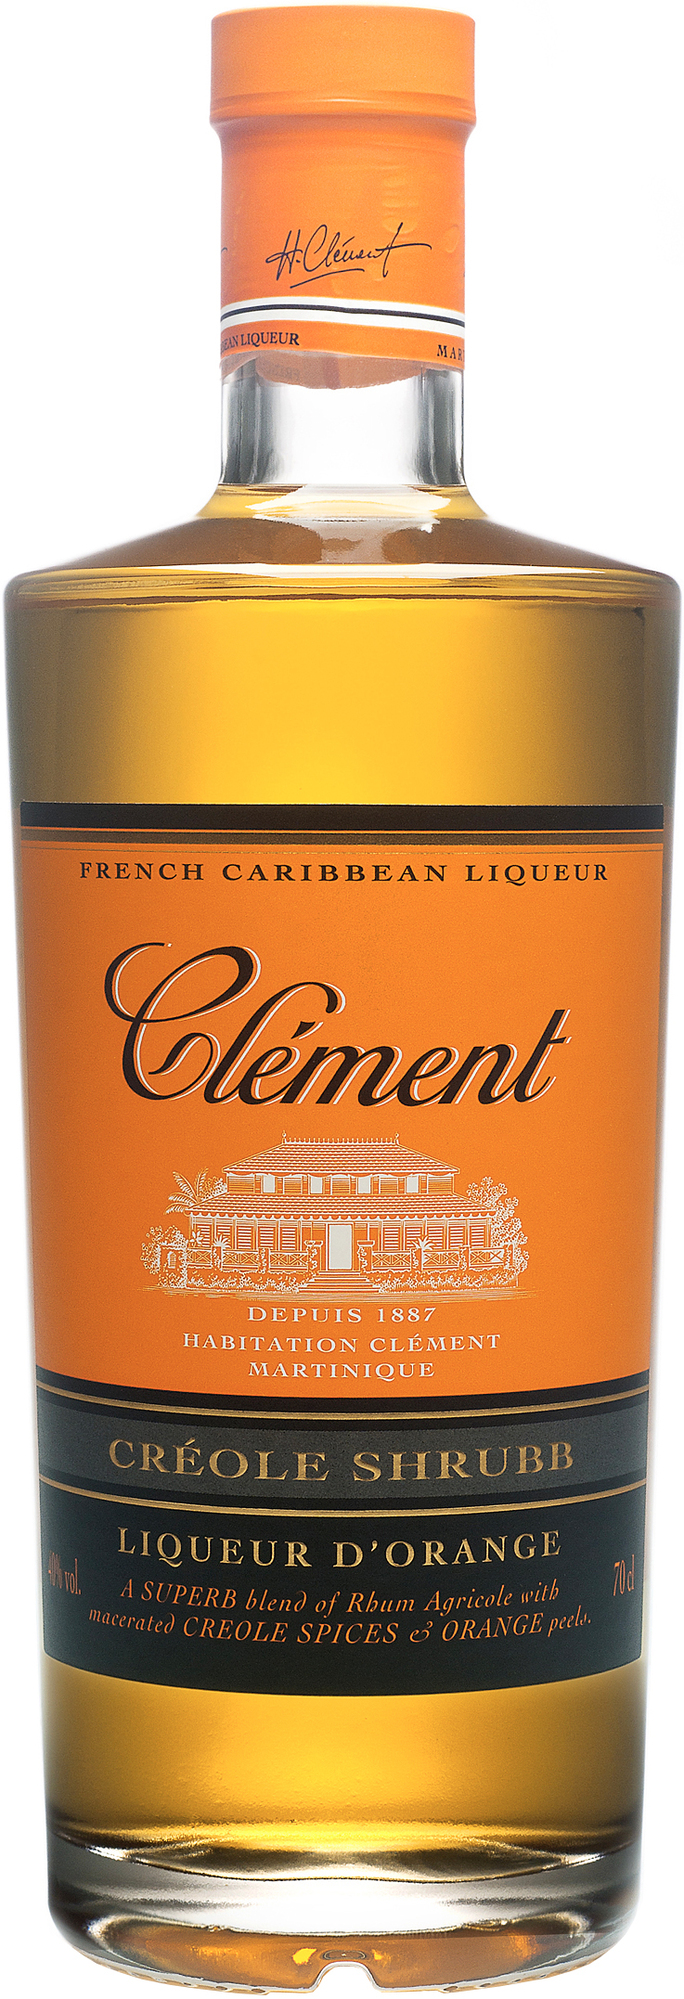 Clément Creole Shrubb Liqueur D'Orange 0,7 l 40%